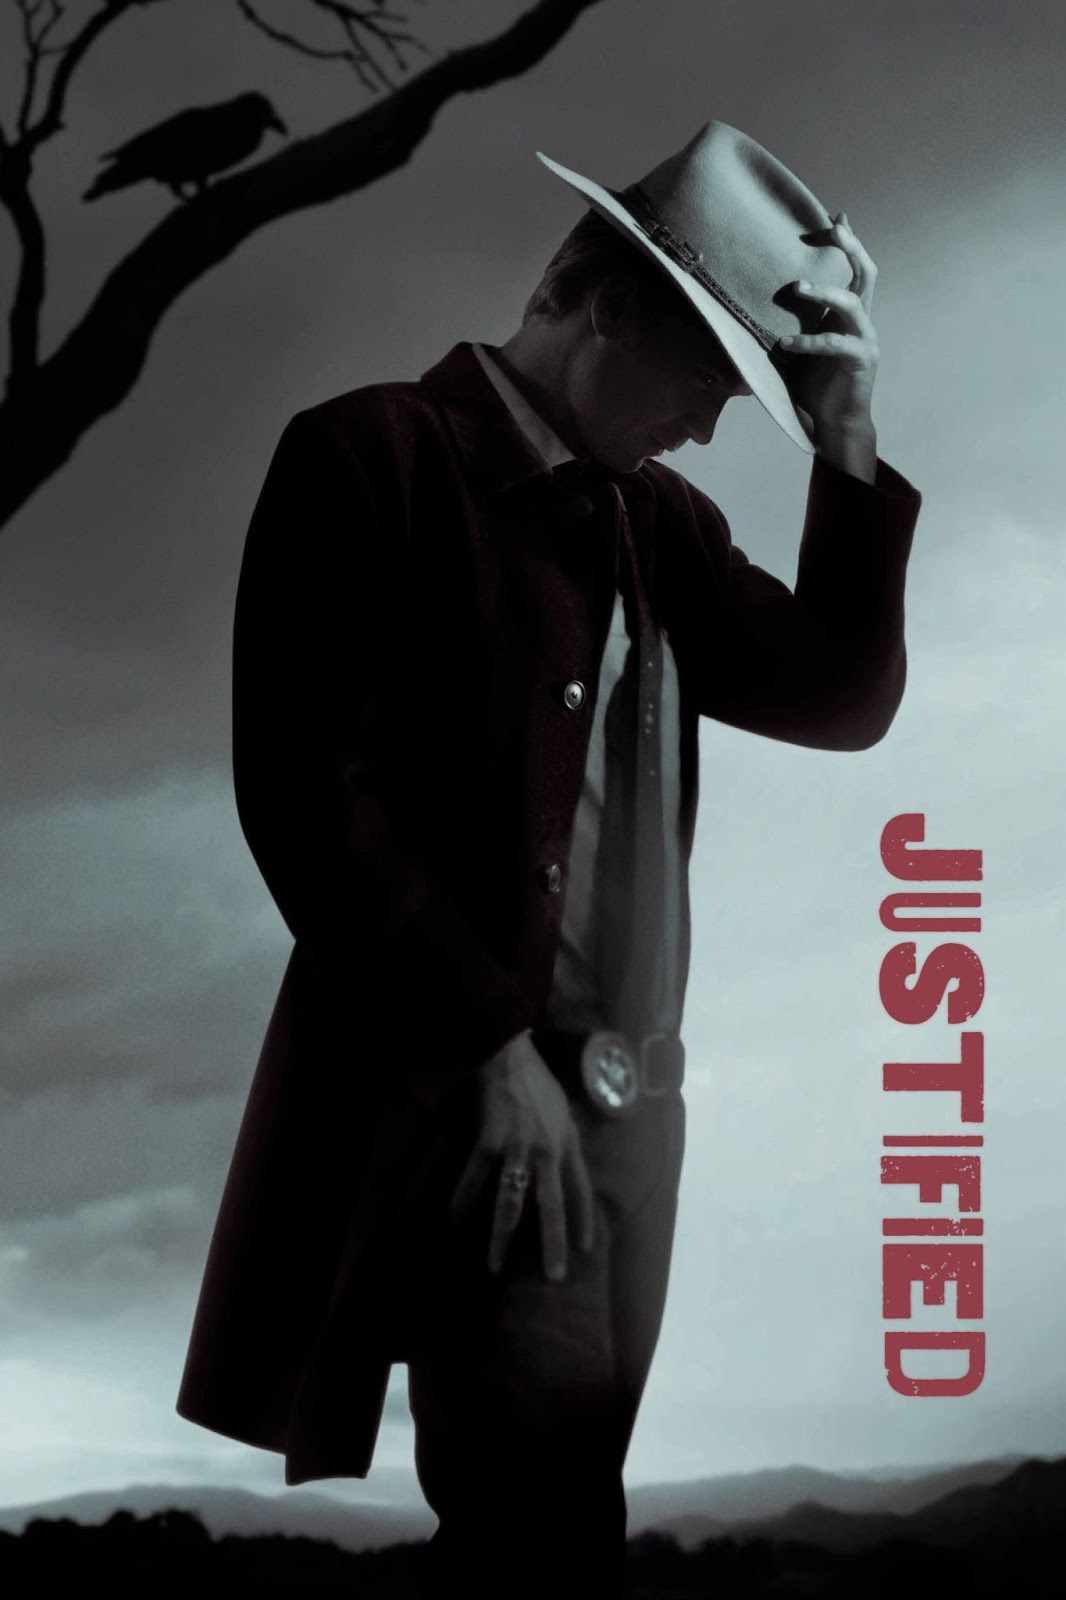 Justified 2015: Season 6